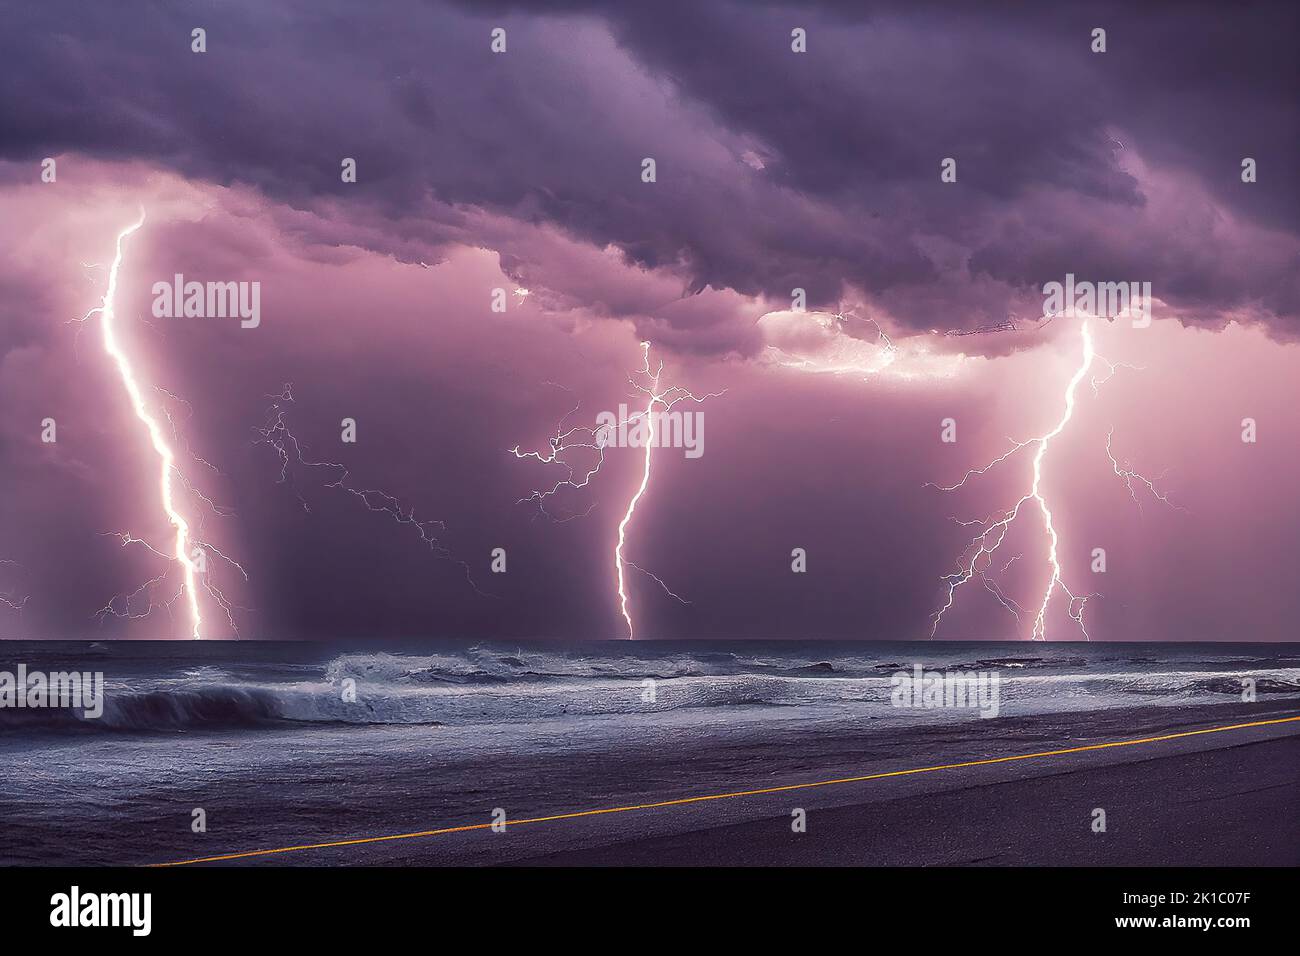 Une tempête tropicale dangereuse se produit dans un ciel nuageux et un océan orageux, causés par le changement climatique. 3D illustration et peinture numérique. Banque D'Images